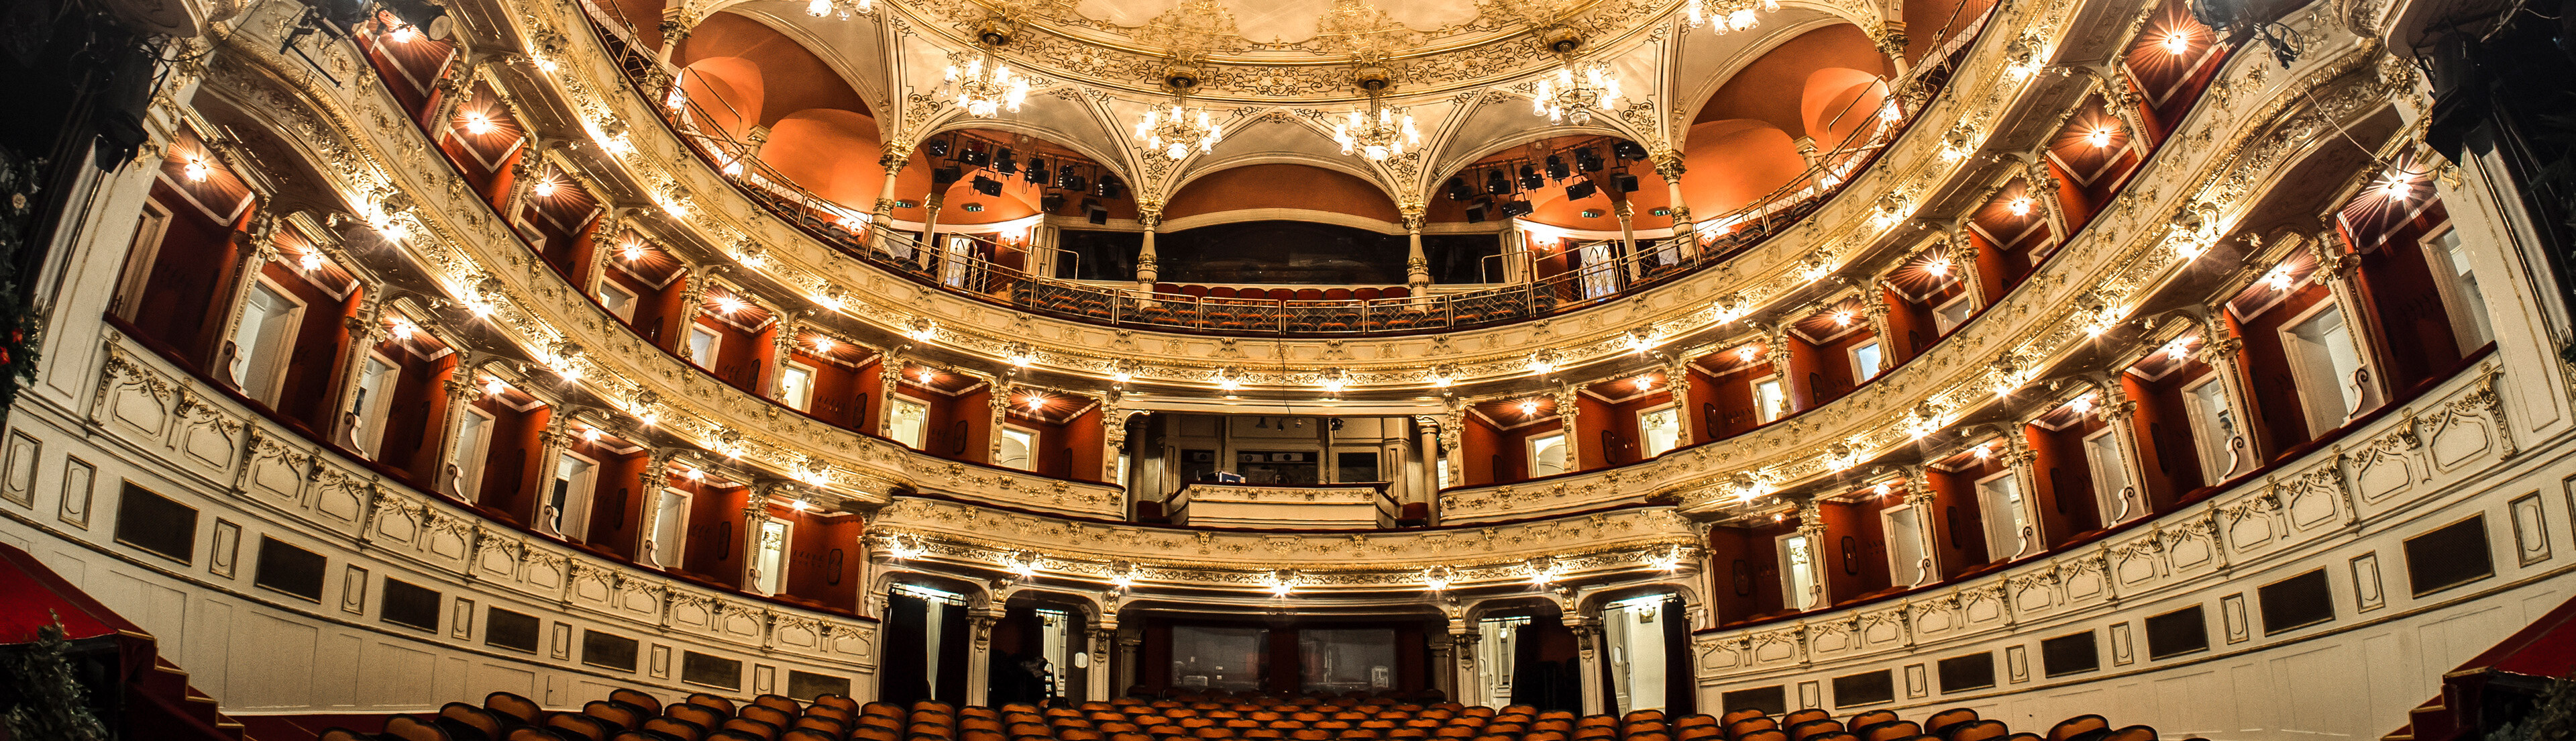 Premierekkel és nagyszínházi produkciókkal várja a közönséget a Pécsi Nemzeti Színház az őszi szezonban